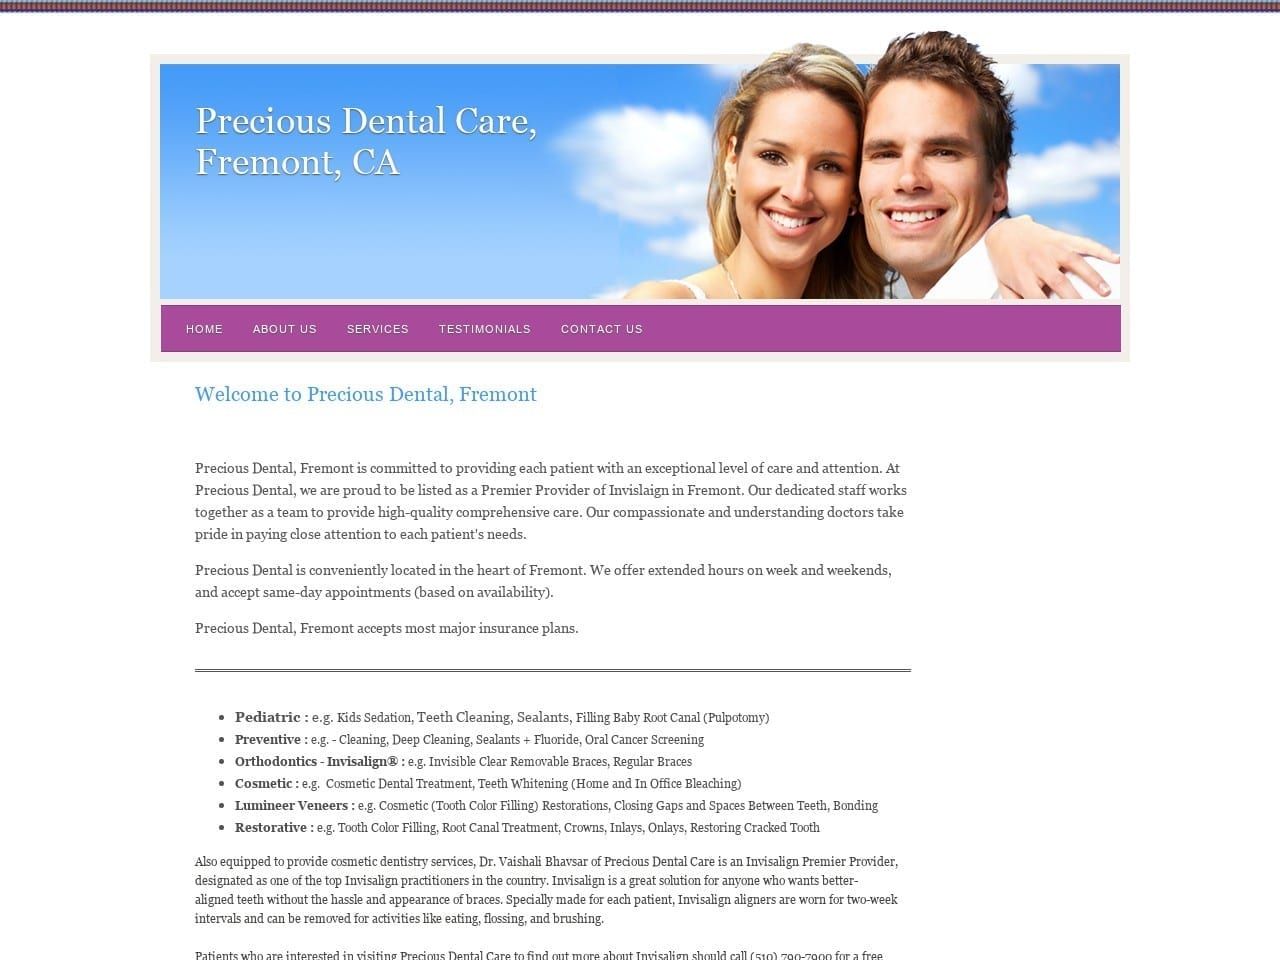 Precious Dental Website Screenshot from preciousdental-fremont.com